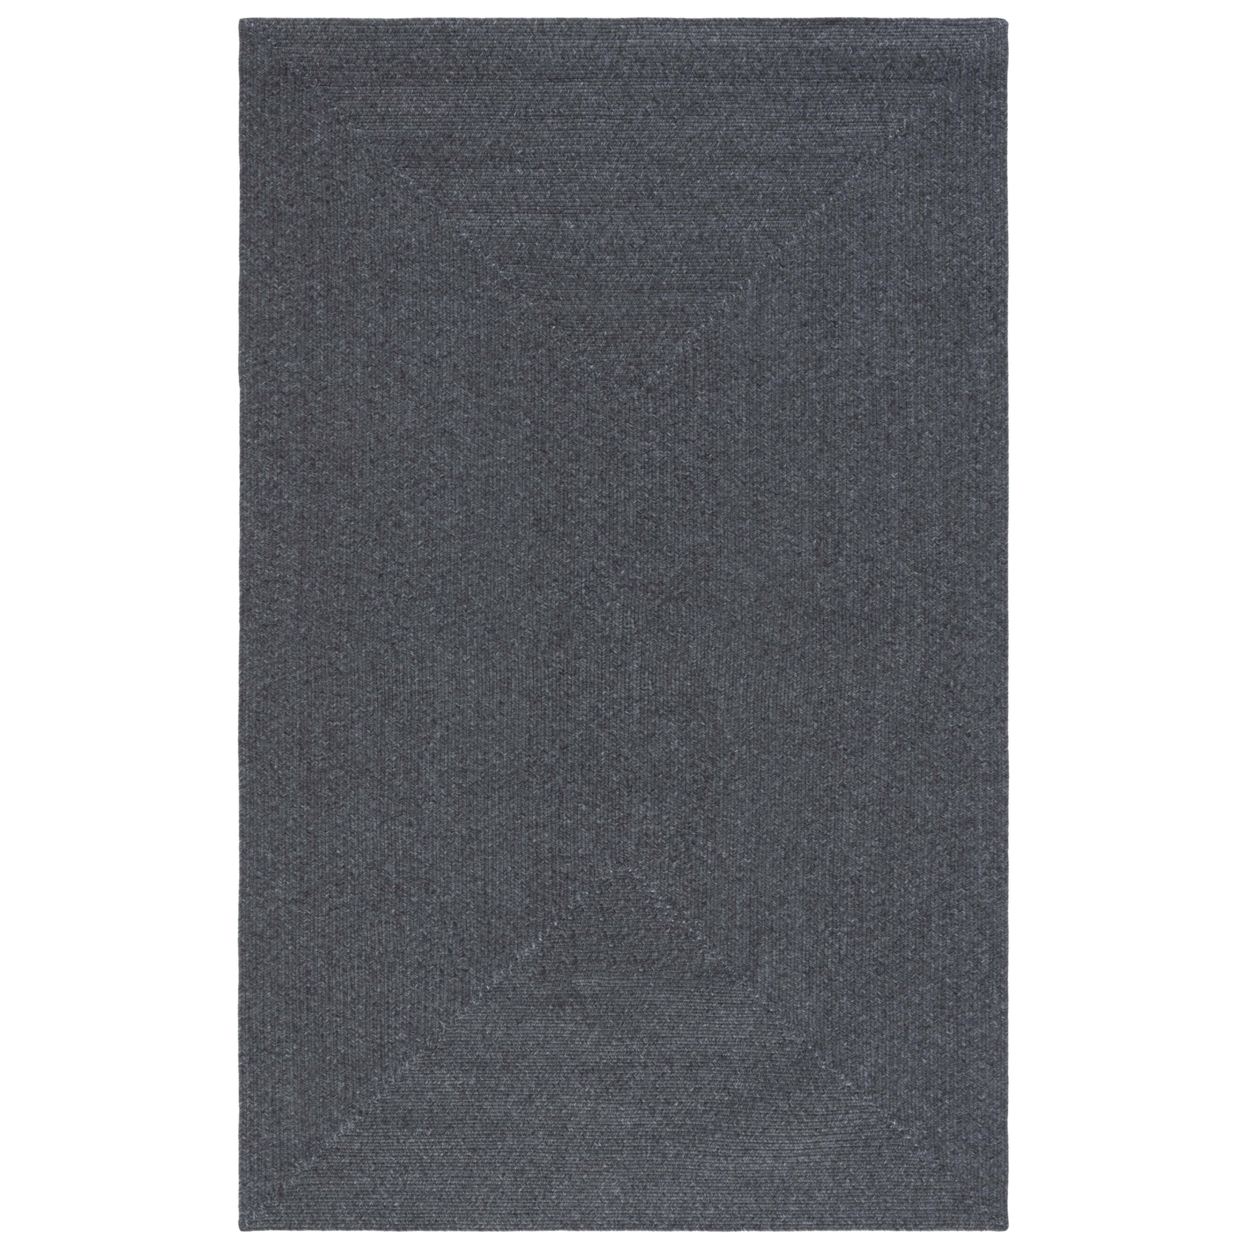 SAFAVIEH BRA201Z Braided Black - Ivory / Grey, 8' X 10' Rectangle